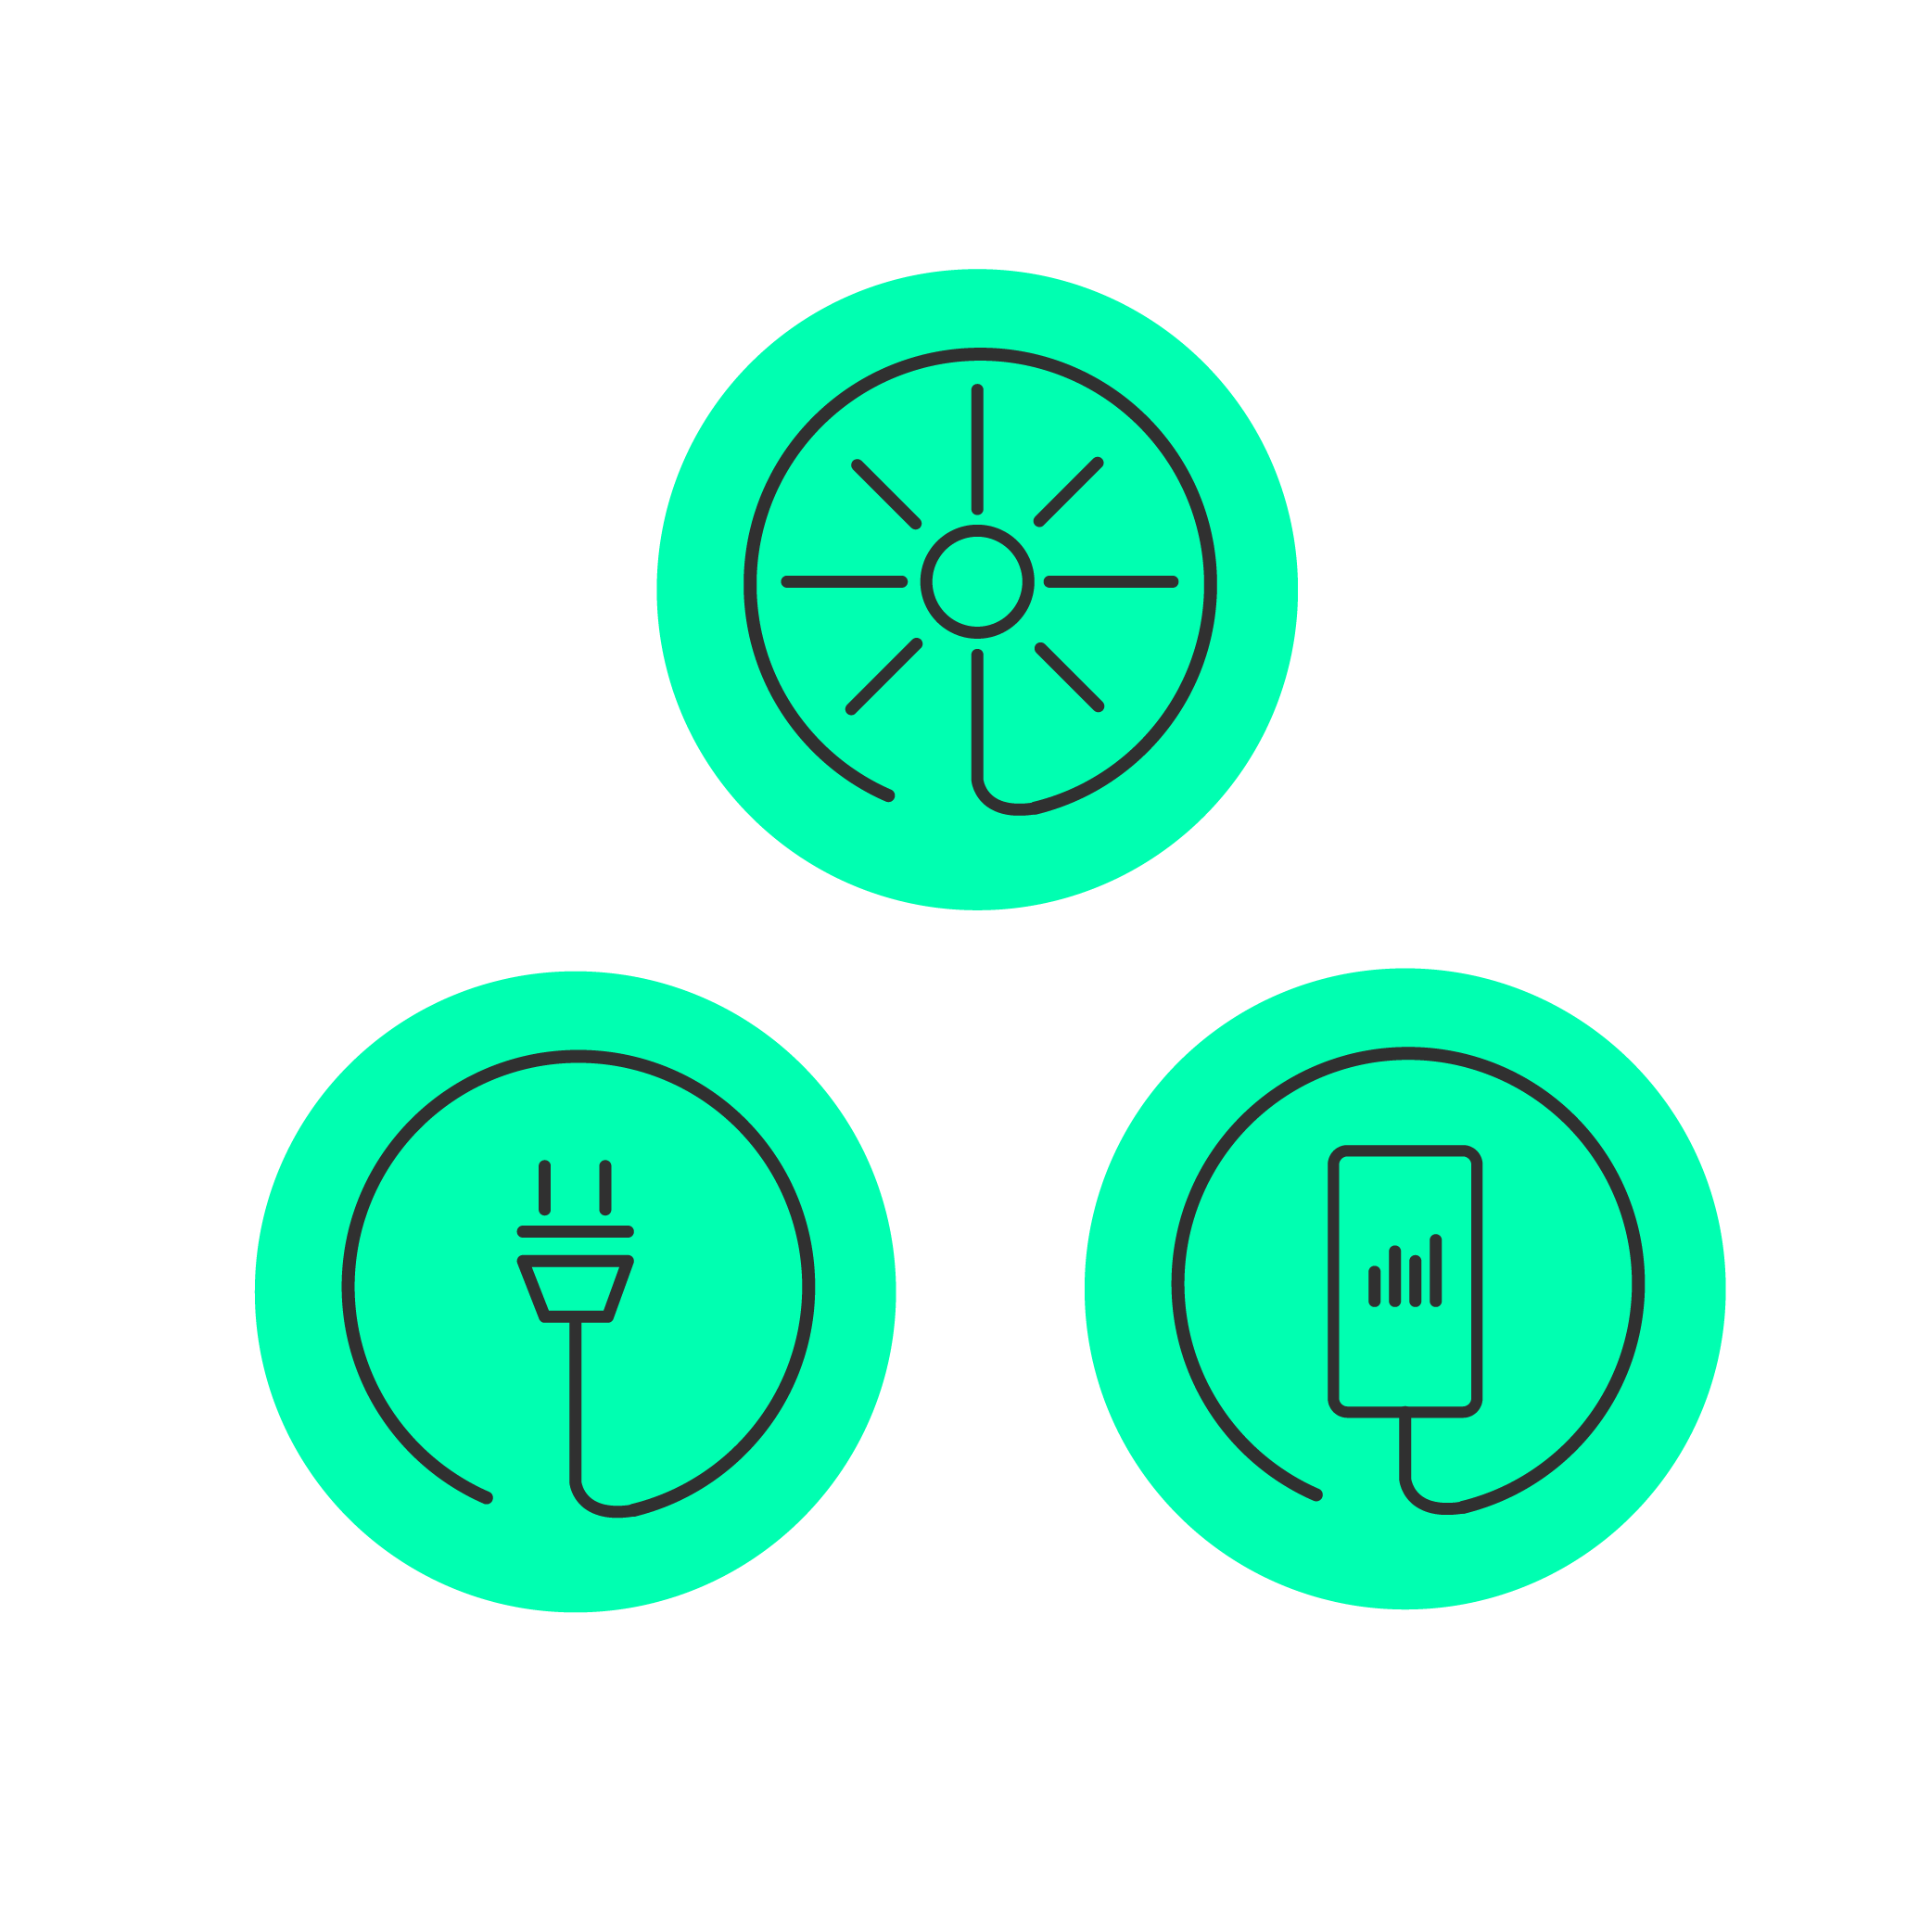 Die Icons sind adaptiert von der Neon-grünen Sonne.